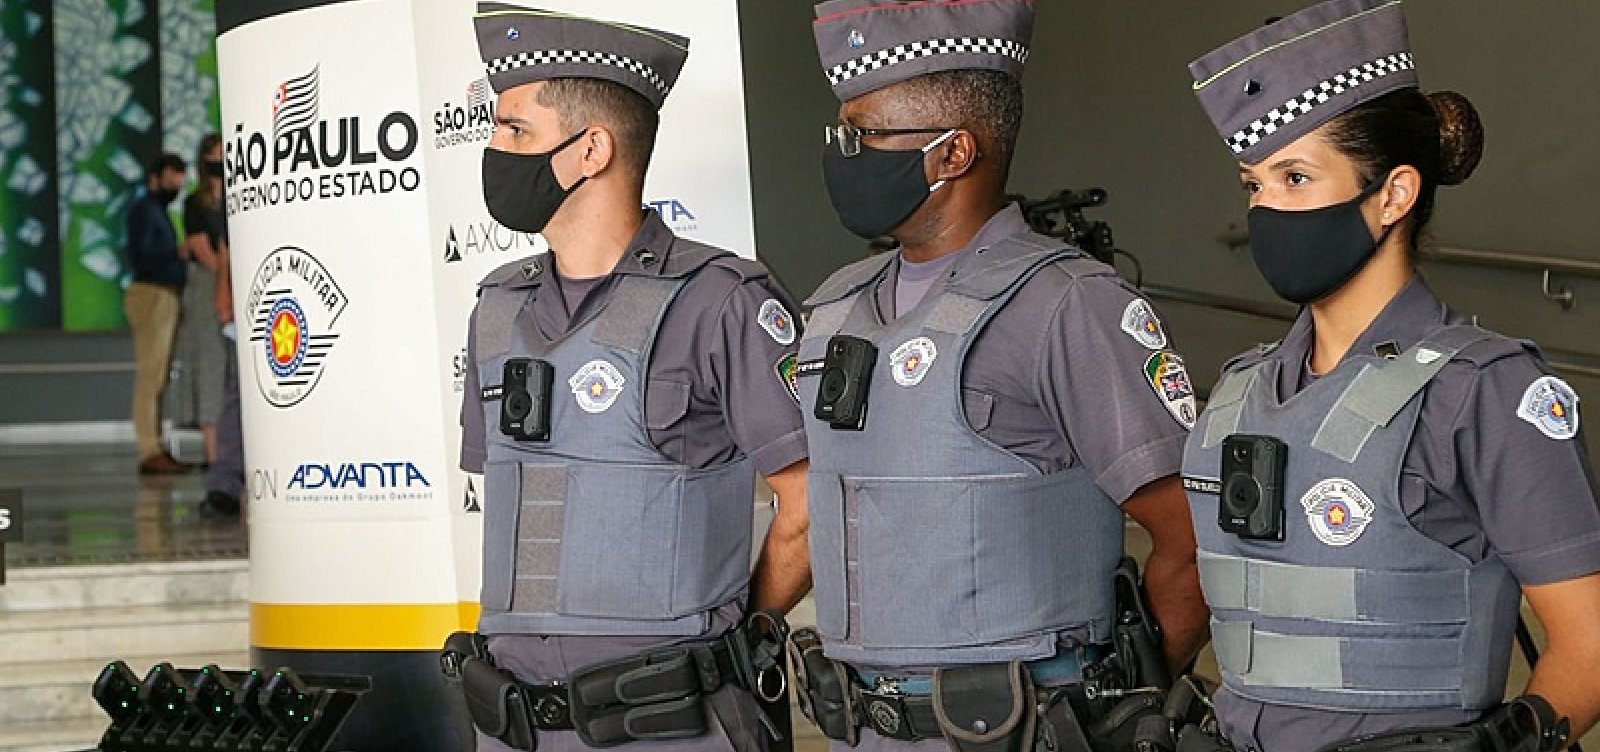 Mortes por policiais em SP têm queda de 80% após uso de câmeras em uniformes